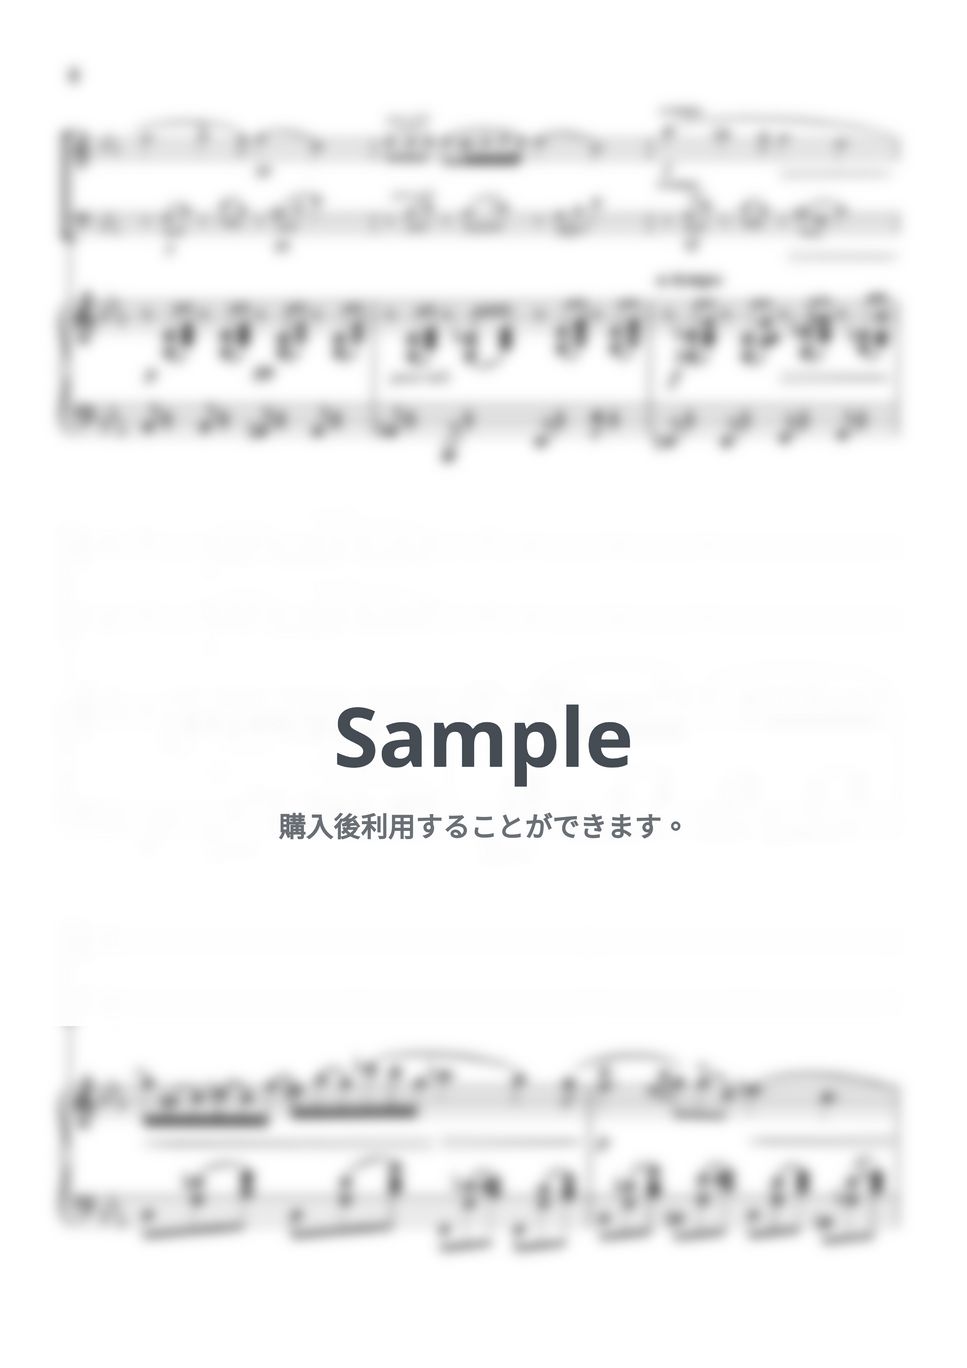 ショパン - ノクターン第2番 (ピアノトリオ/ヴァイオリン&チェロ) by pfkaori